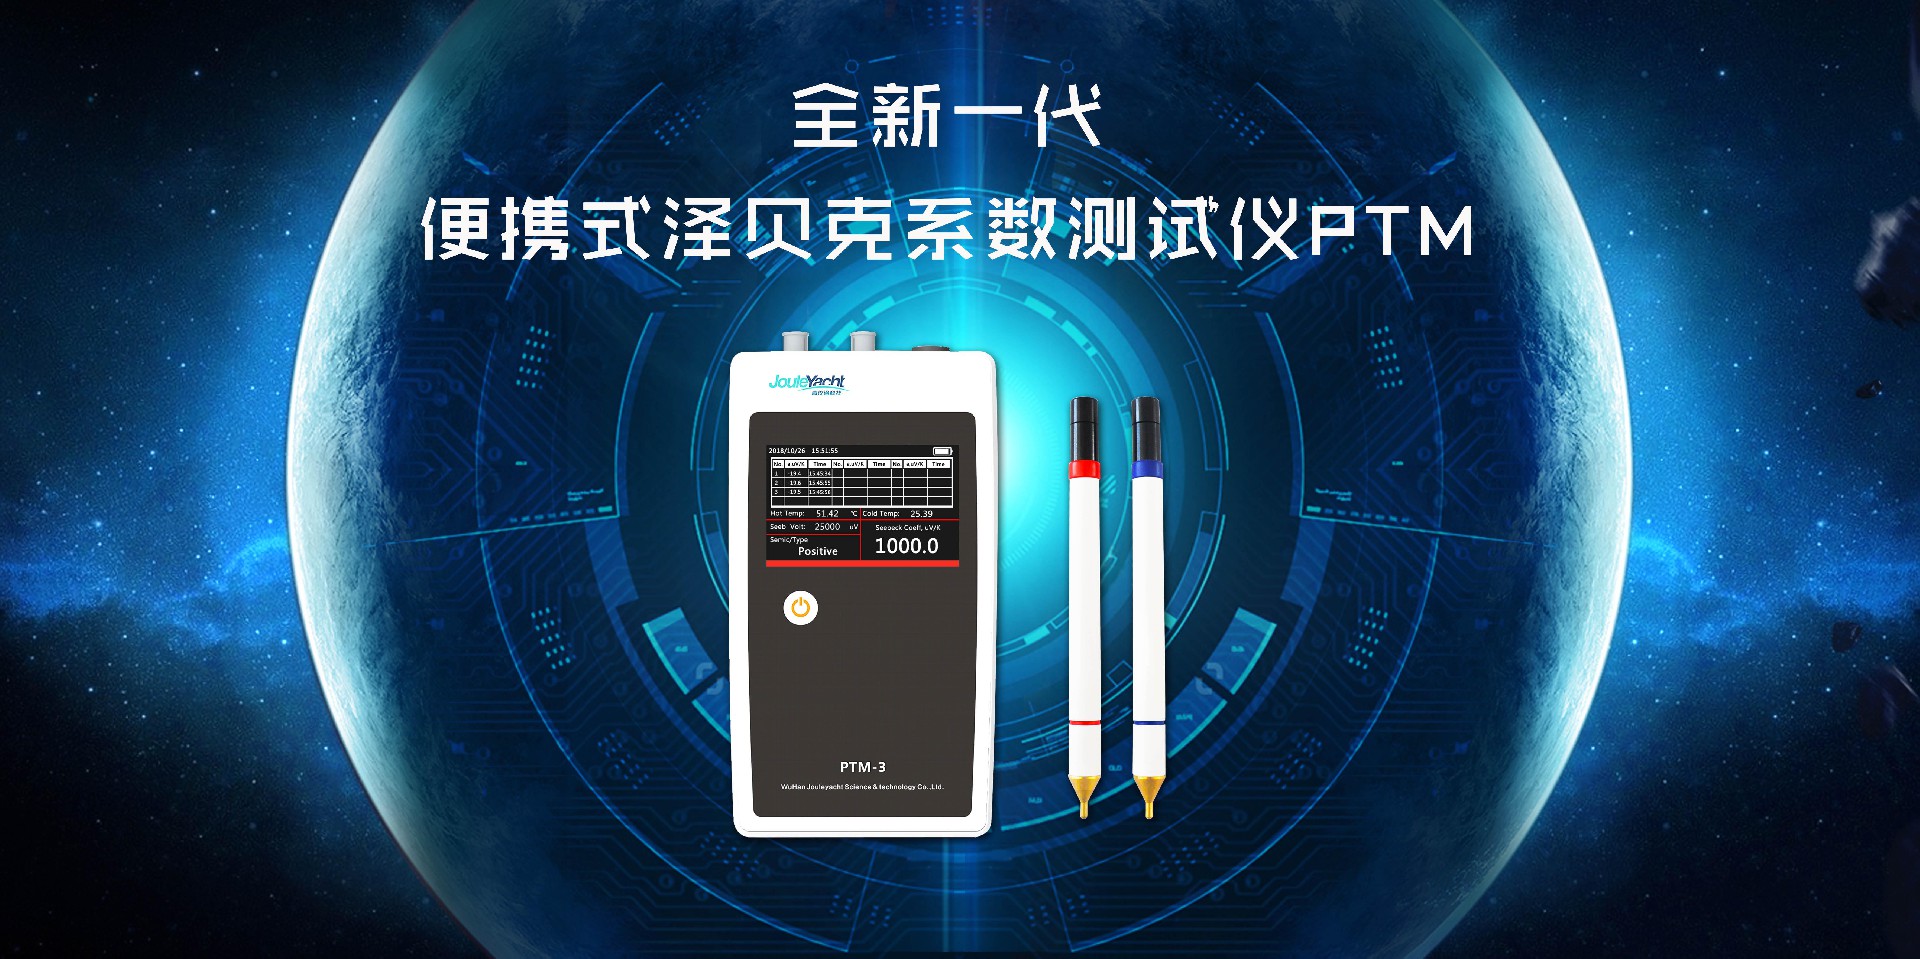 6秒测样，全新一代便携式热电参数测试仪PTM焕新呈现！